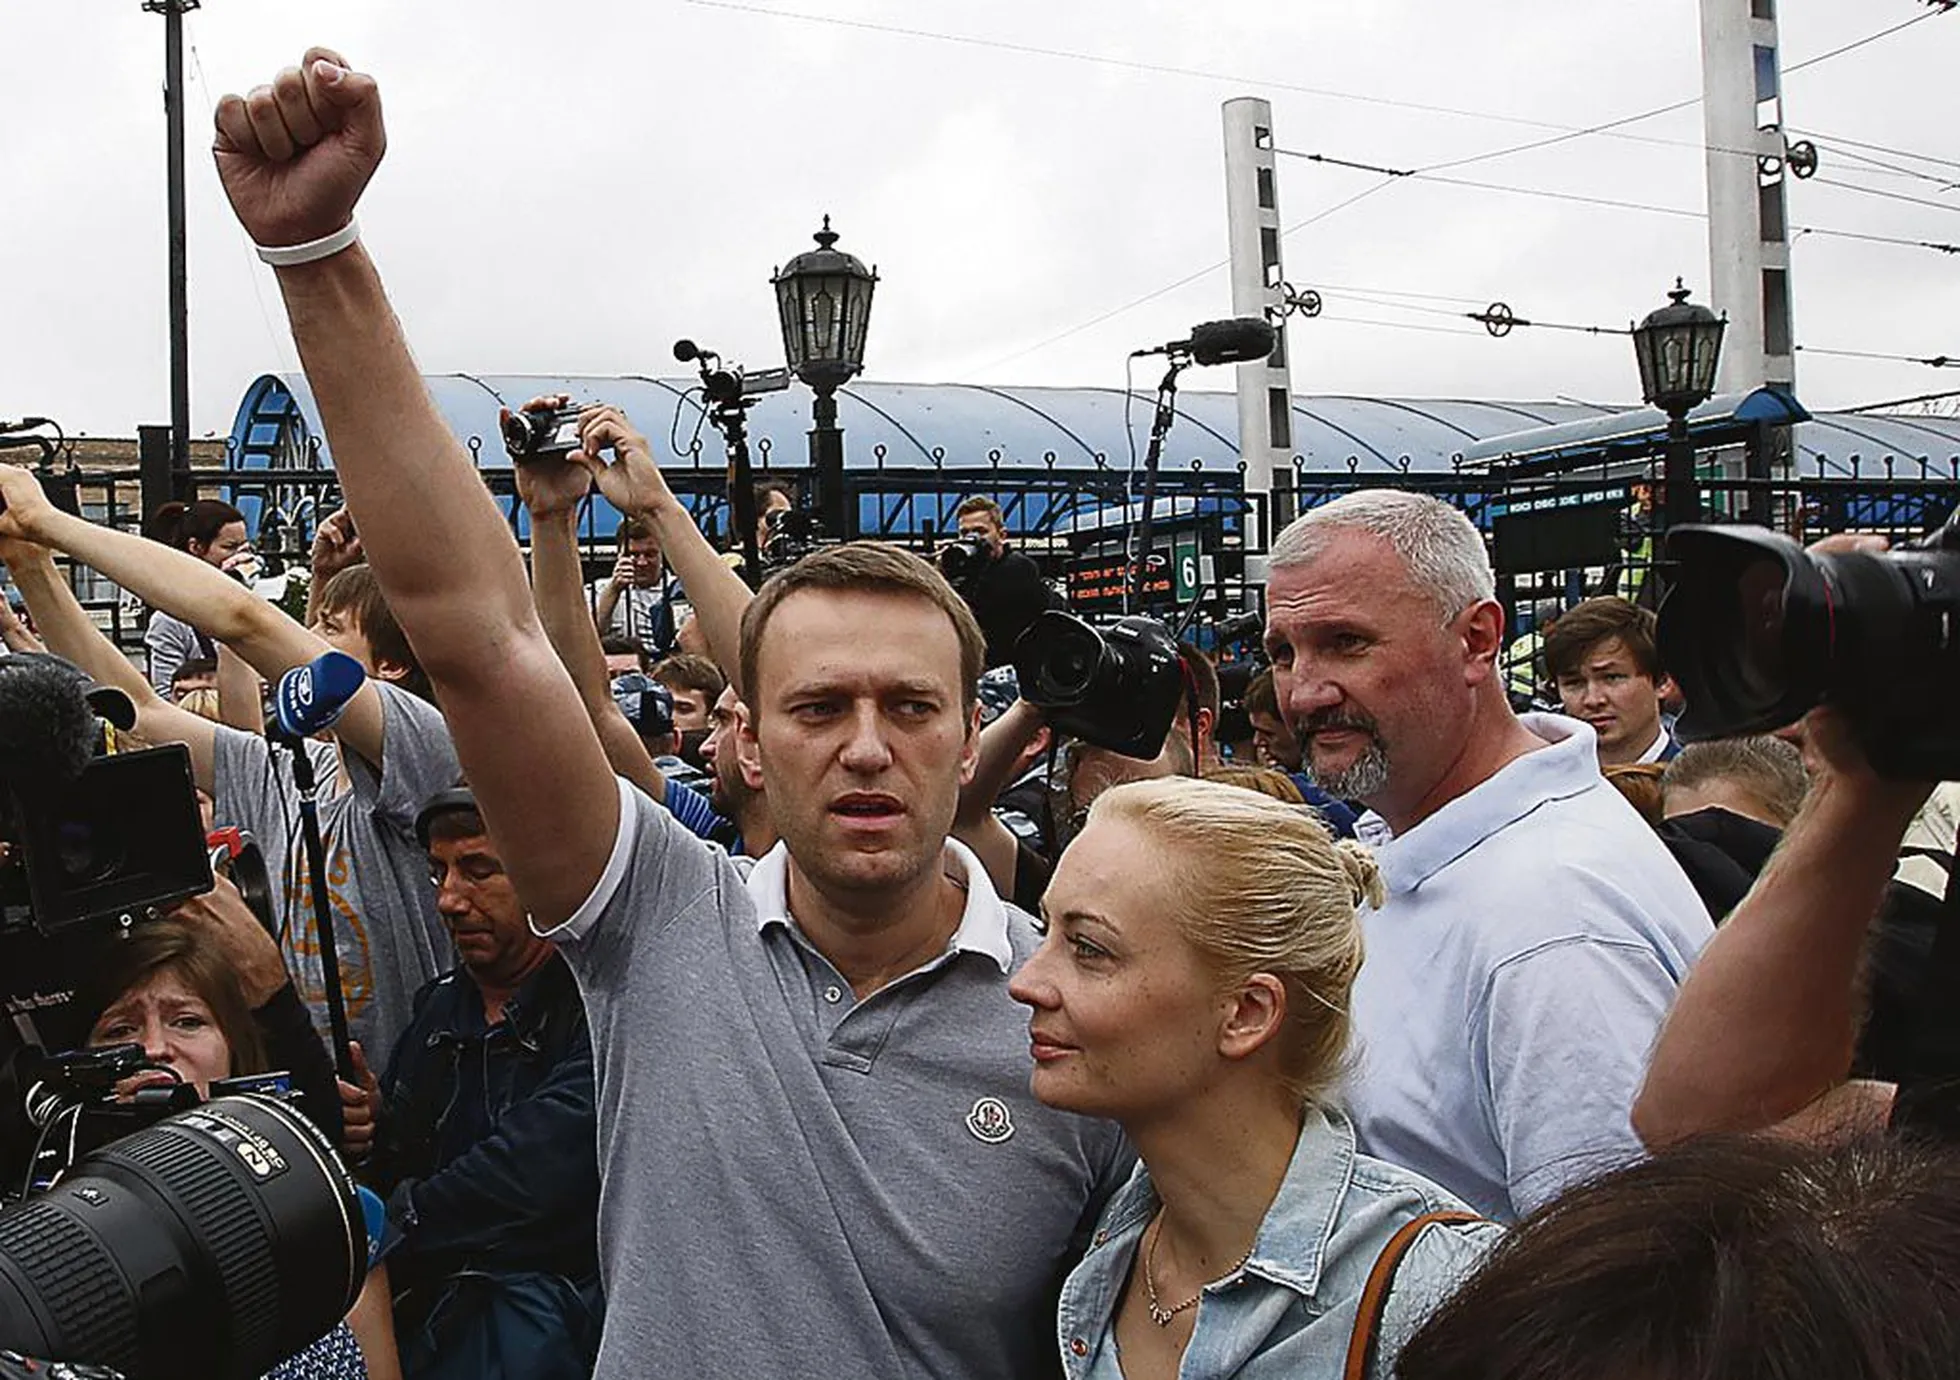 2013.a. Aleksei Navalnõi koos abikaasa Juliaga Moskva raudteejaamas.